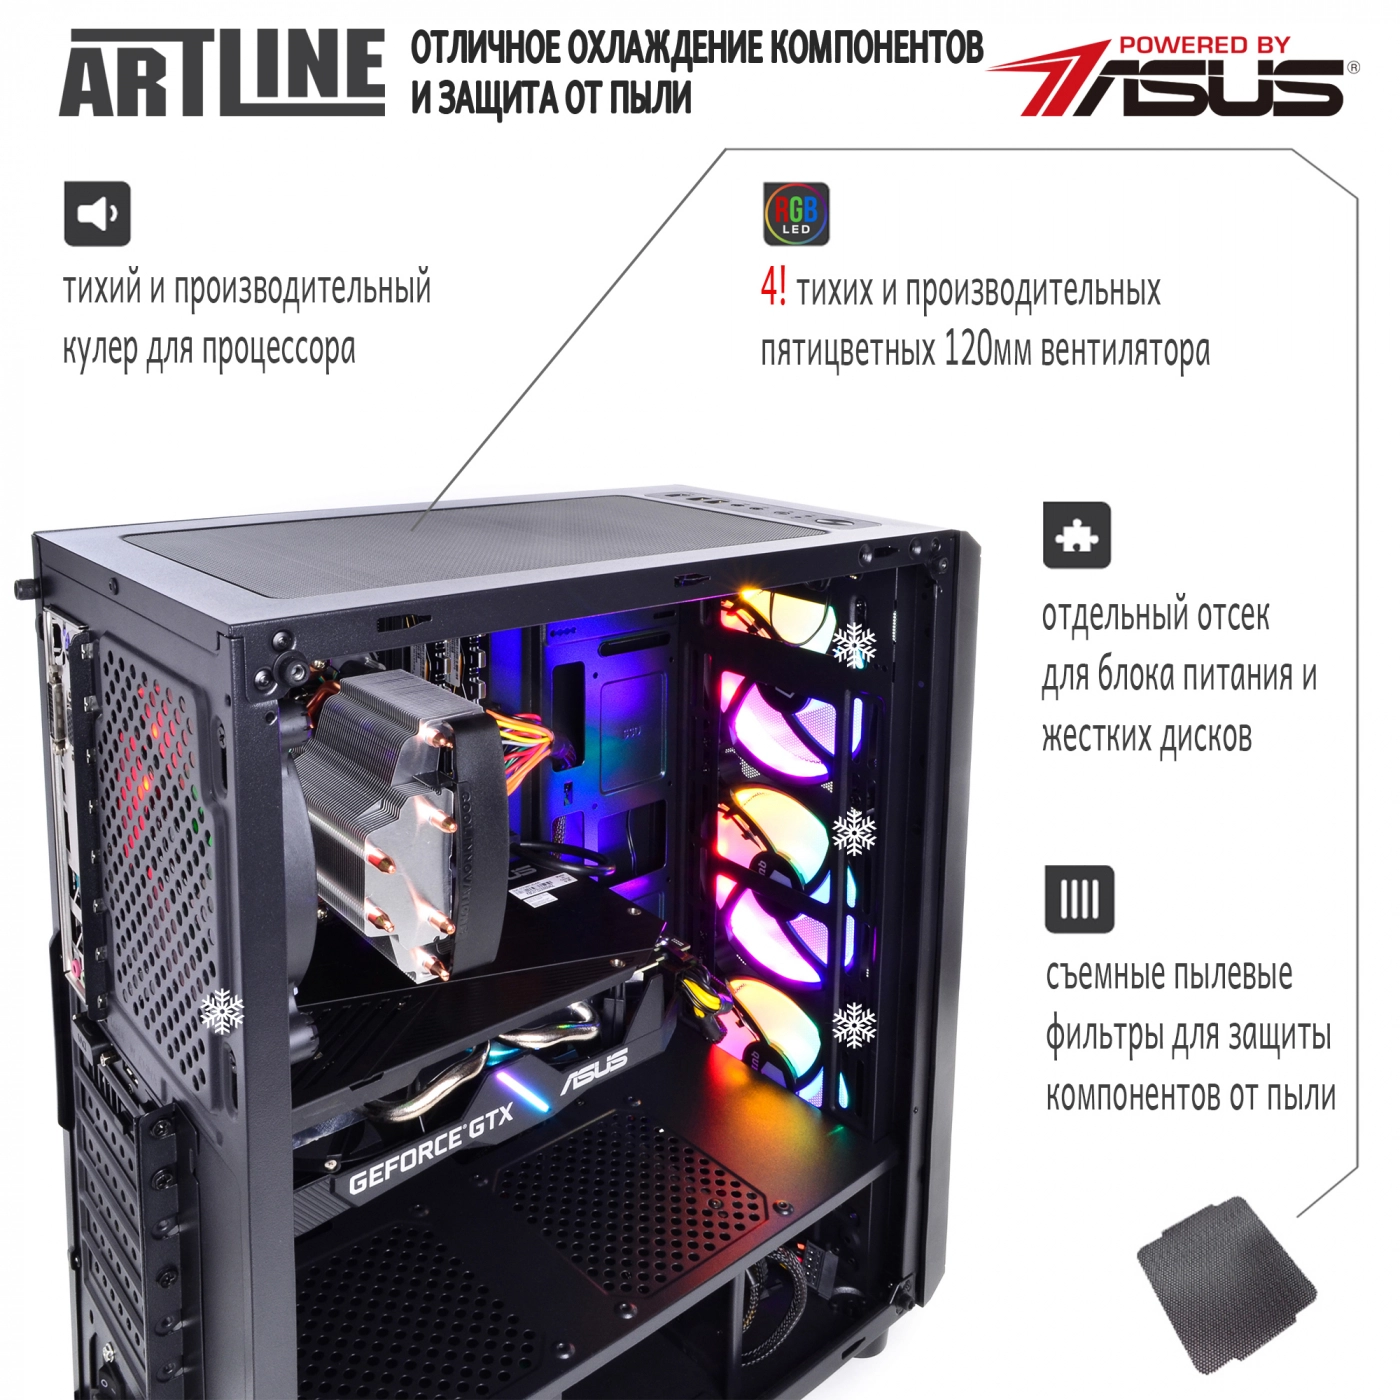 Купить Компьютер ARTLINE Gaming X53v11 - фото 3